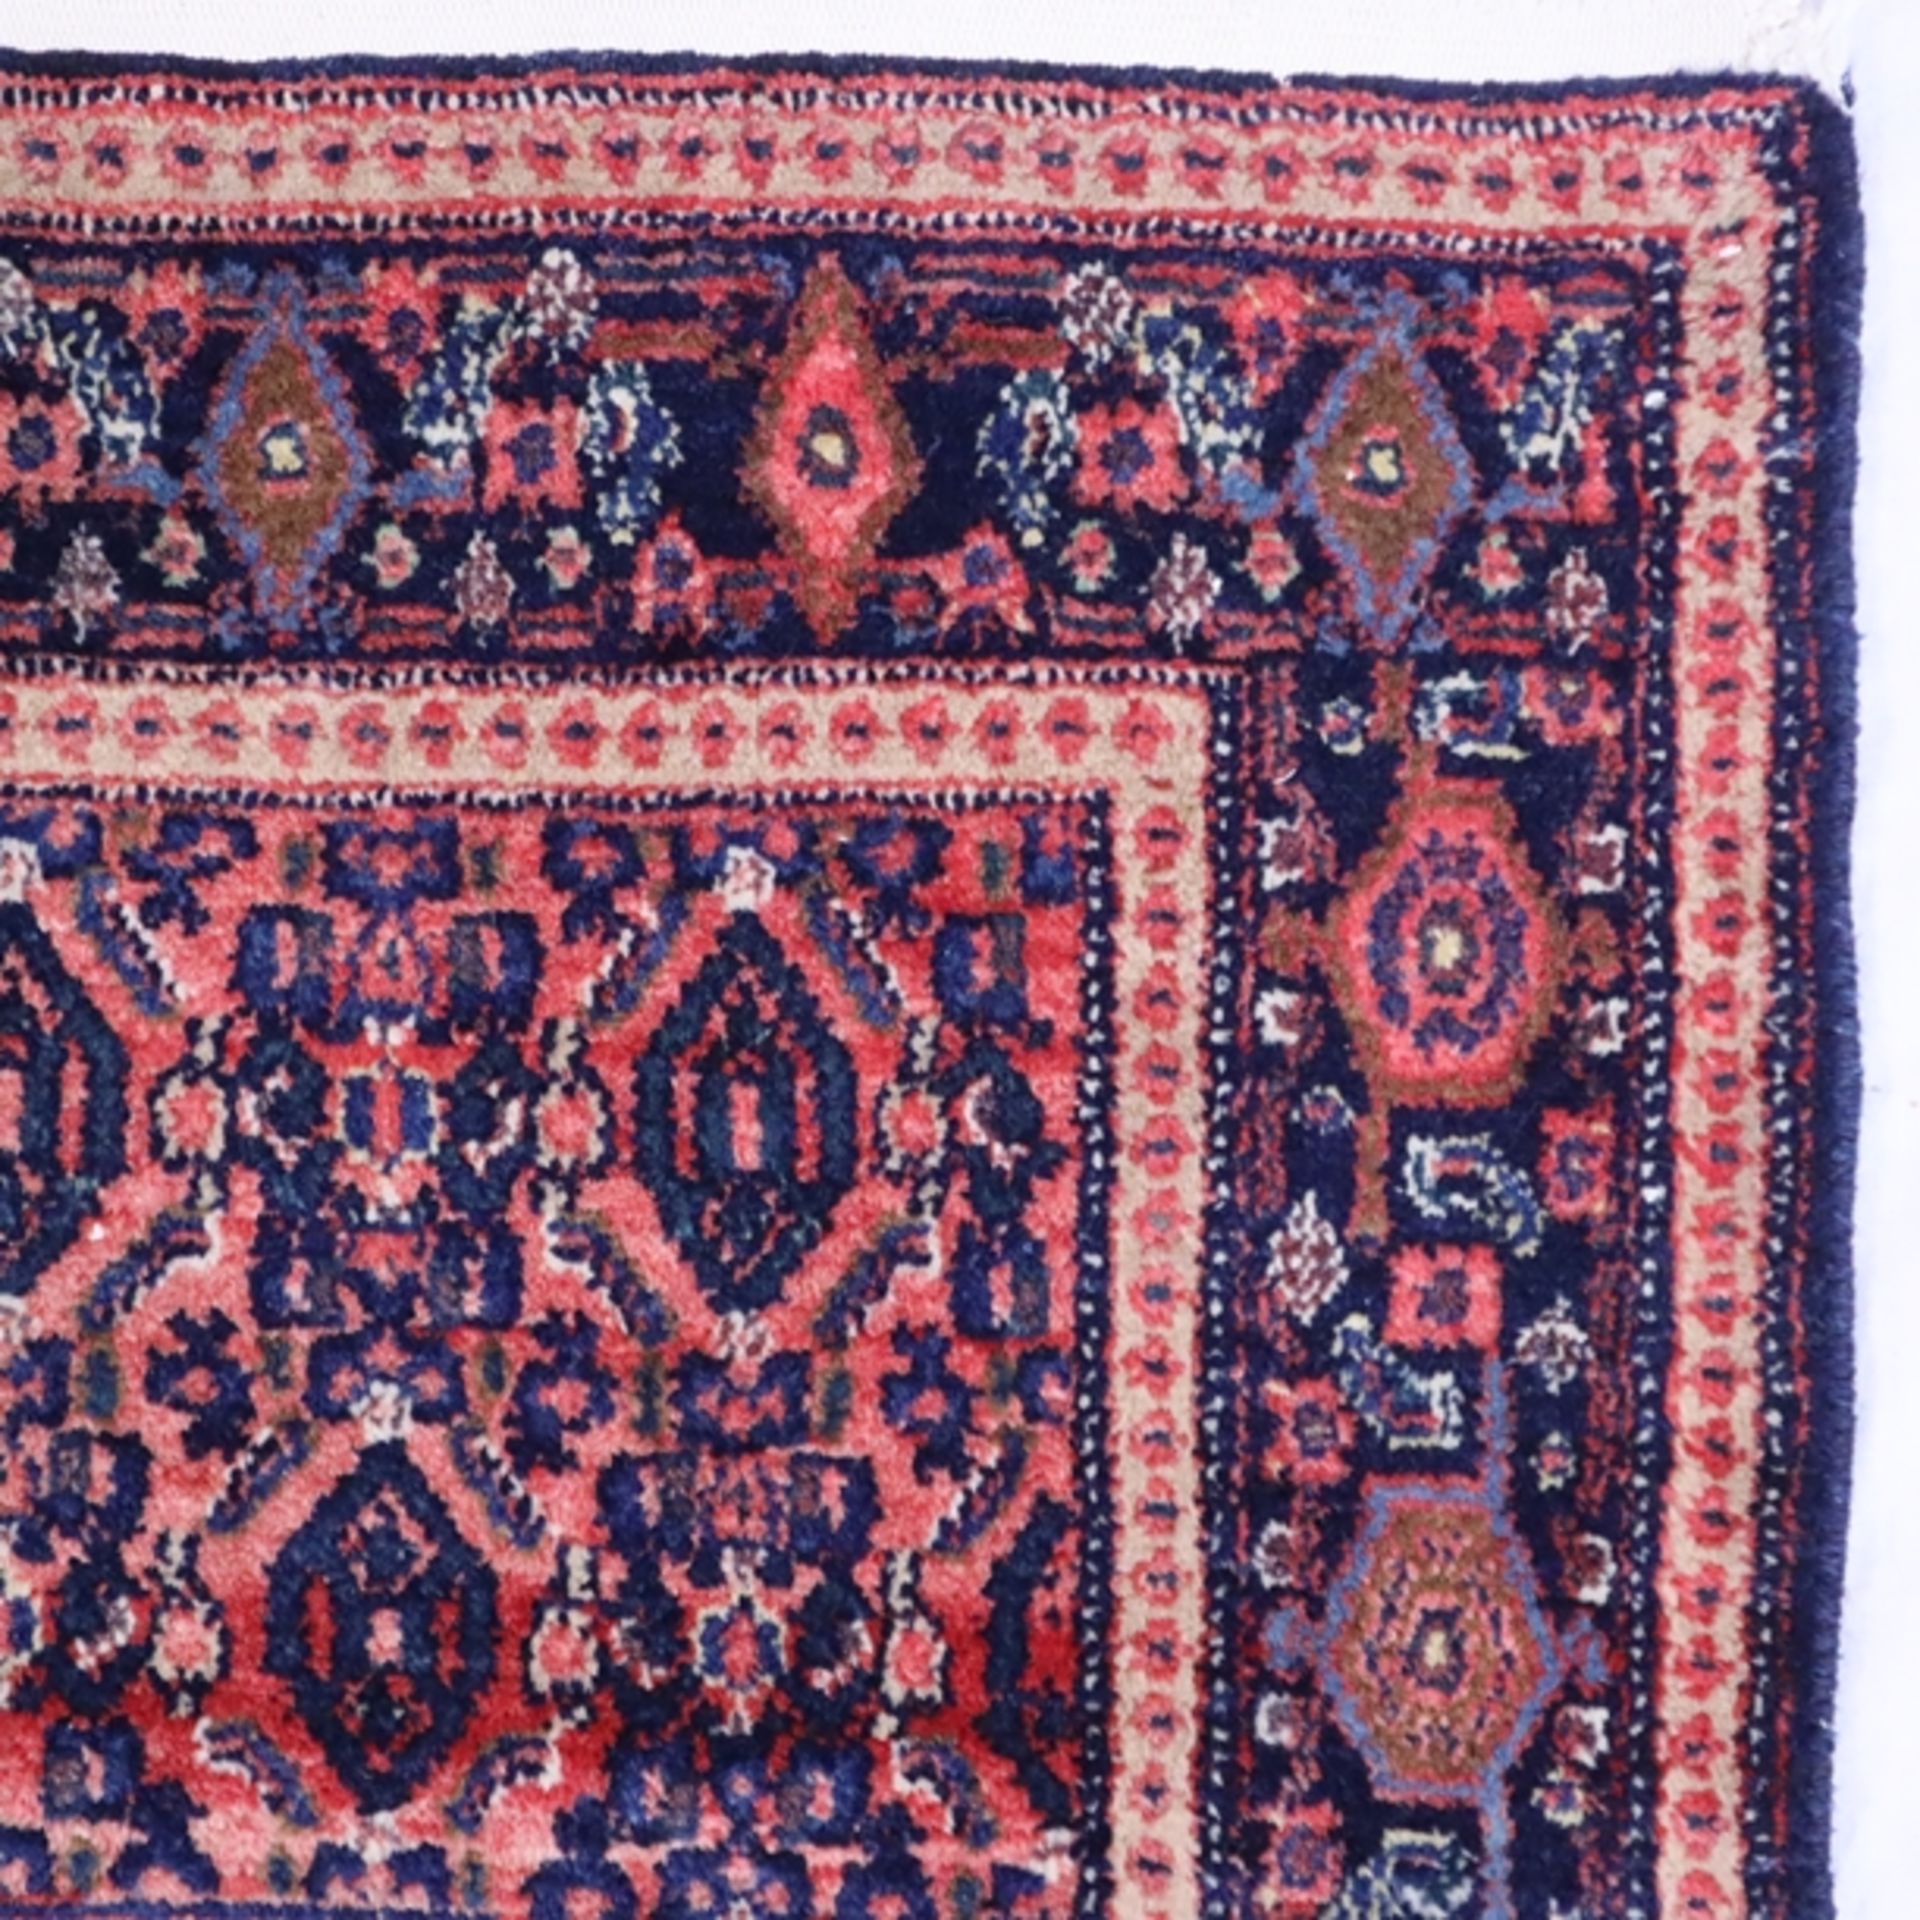 Persischer Orientteppich - Wolle, blaugrundig, ornamentales und florales Muster, mehrfache Bordüre, - Bild 4 aus 6